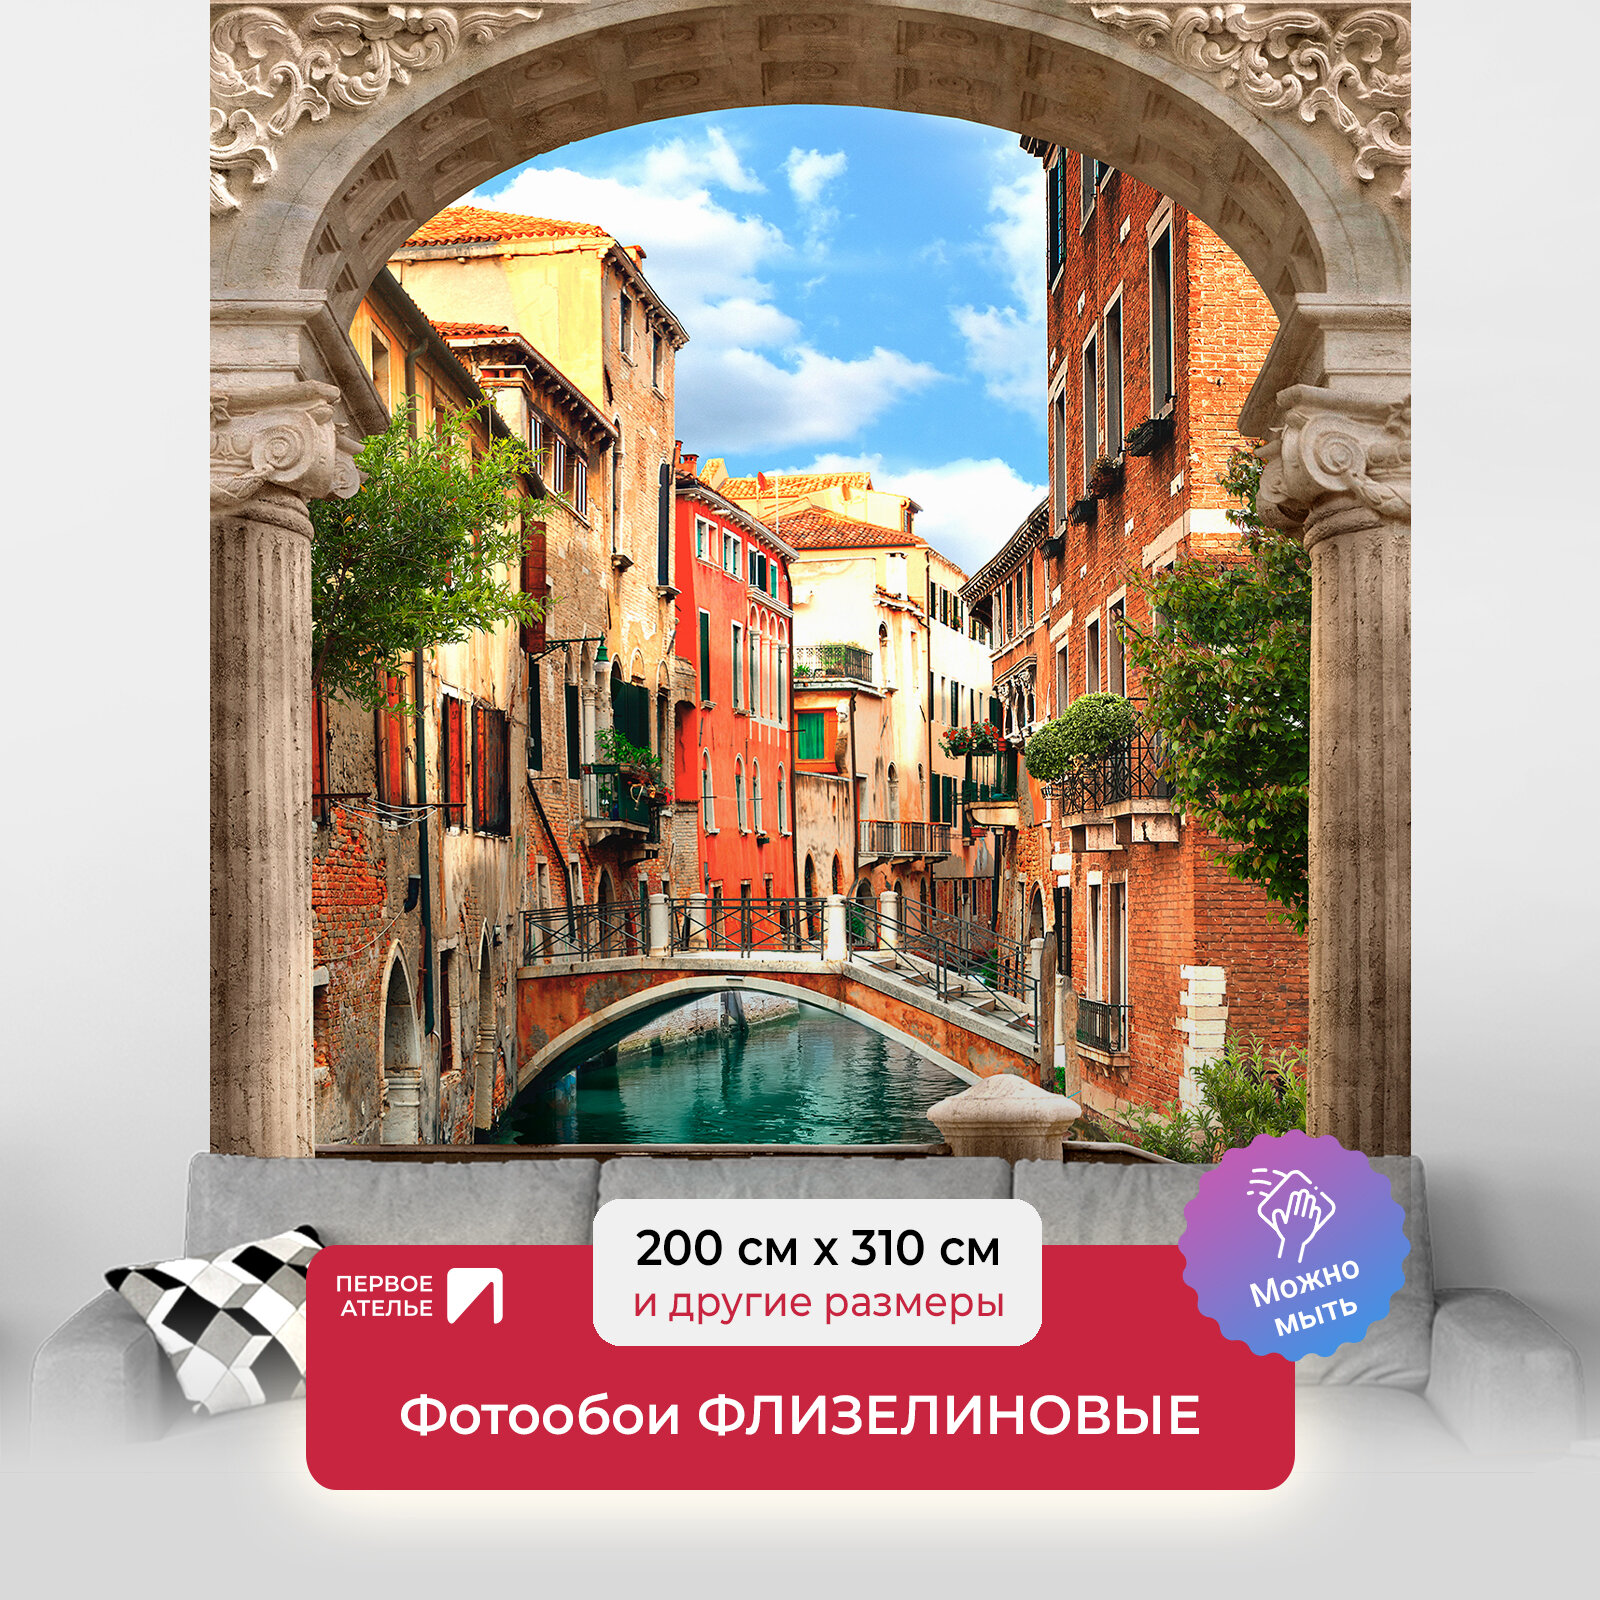 Фотообои на стену первое ателье "Венеция вид сквозь арку" 200х310 см (ШхВ), флизелиновые Premium